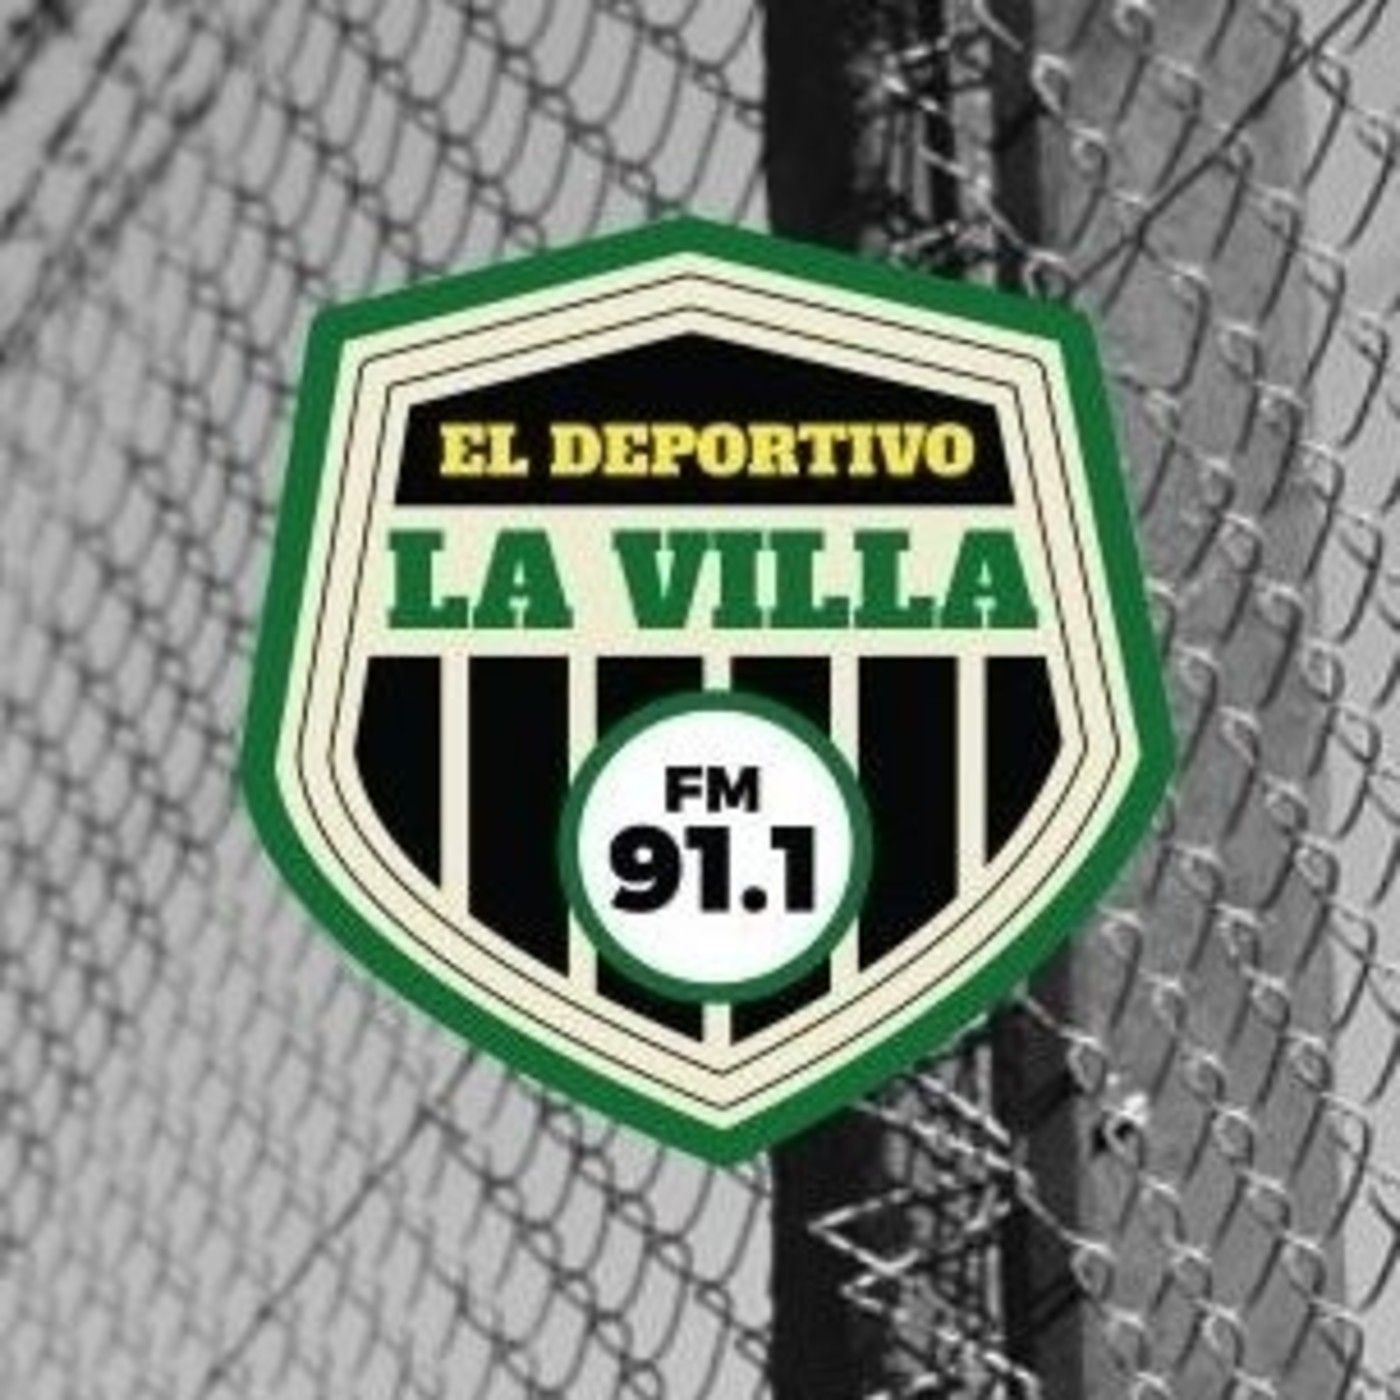 El Deportivo La Villa